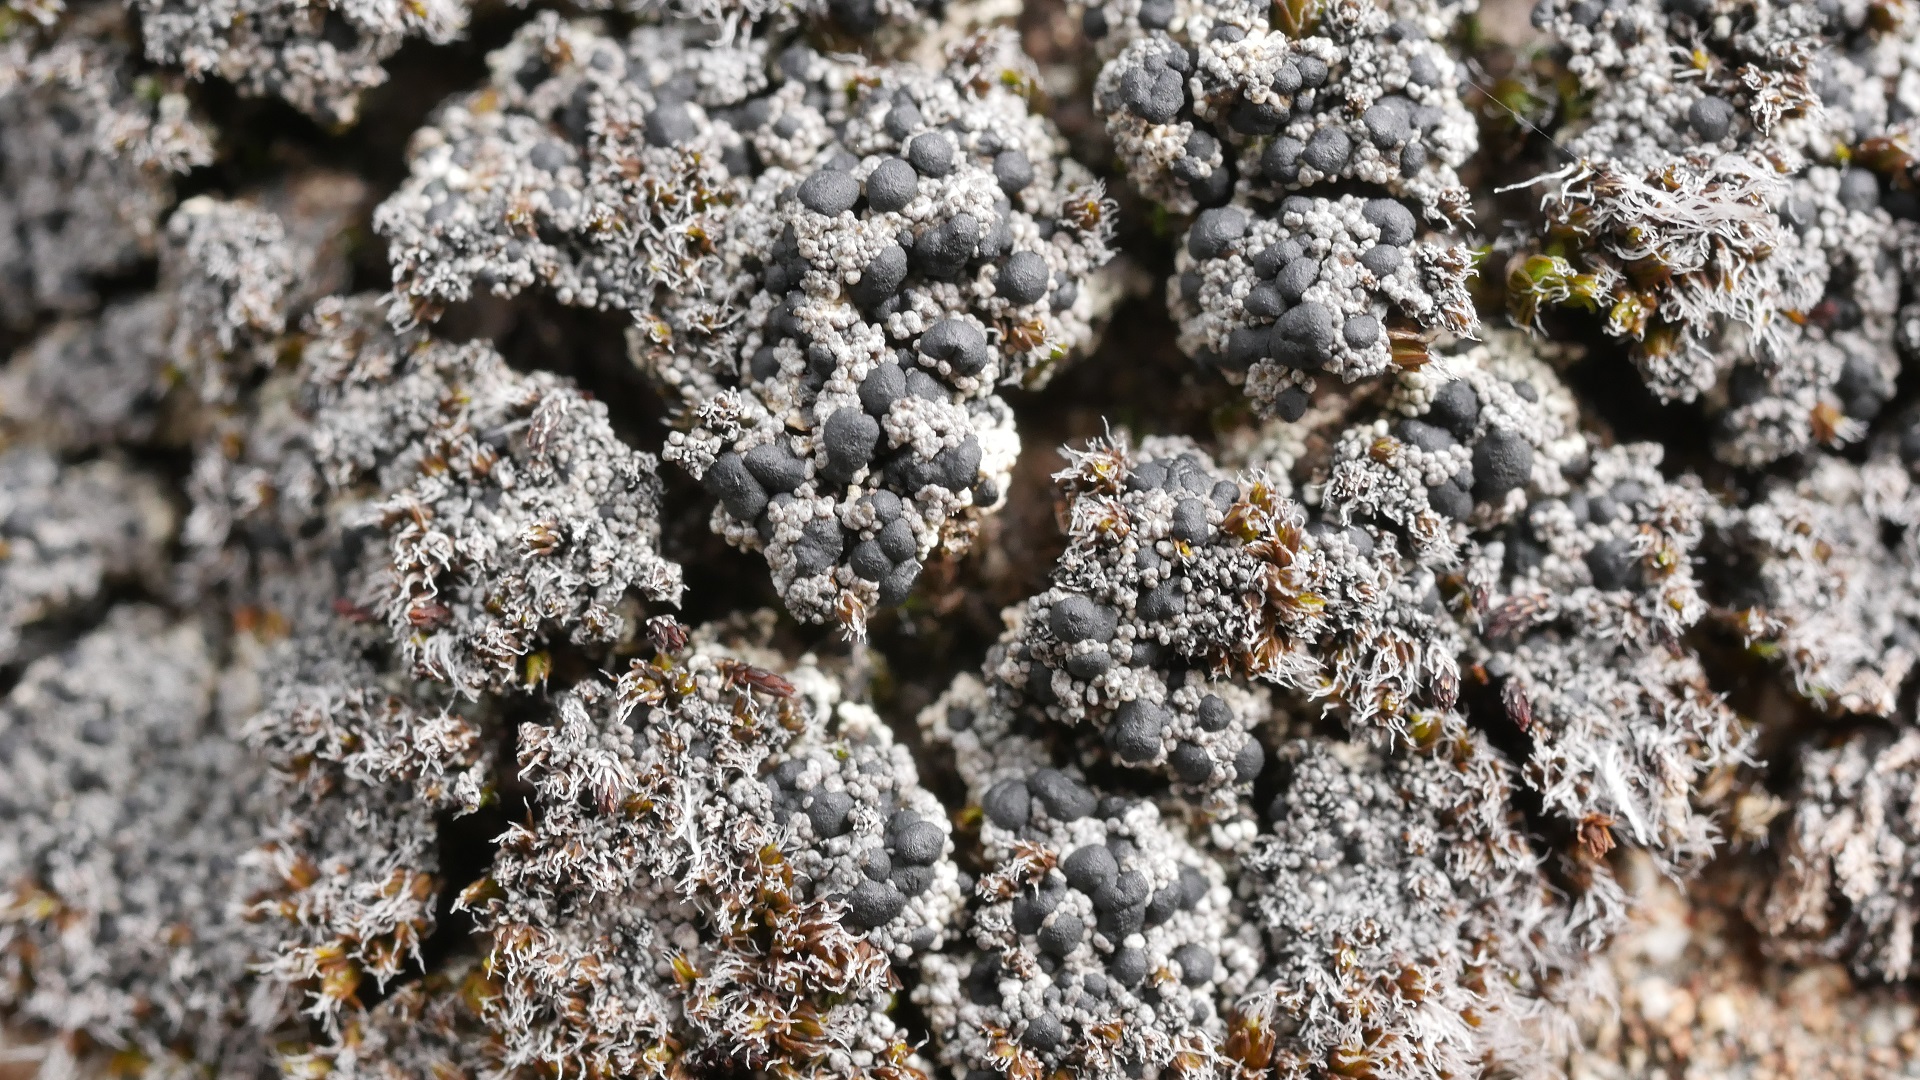 Die winzige Krustenflechte Frutidella caesioatra ist sehr wählerisch. Sie wächst ausschließlich auf gesteinsbewohnenden Moosen der Gattungen Andreaea und Schistidium.